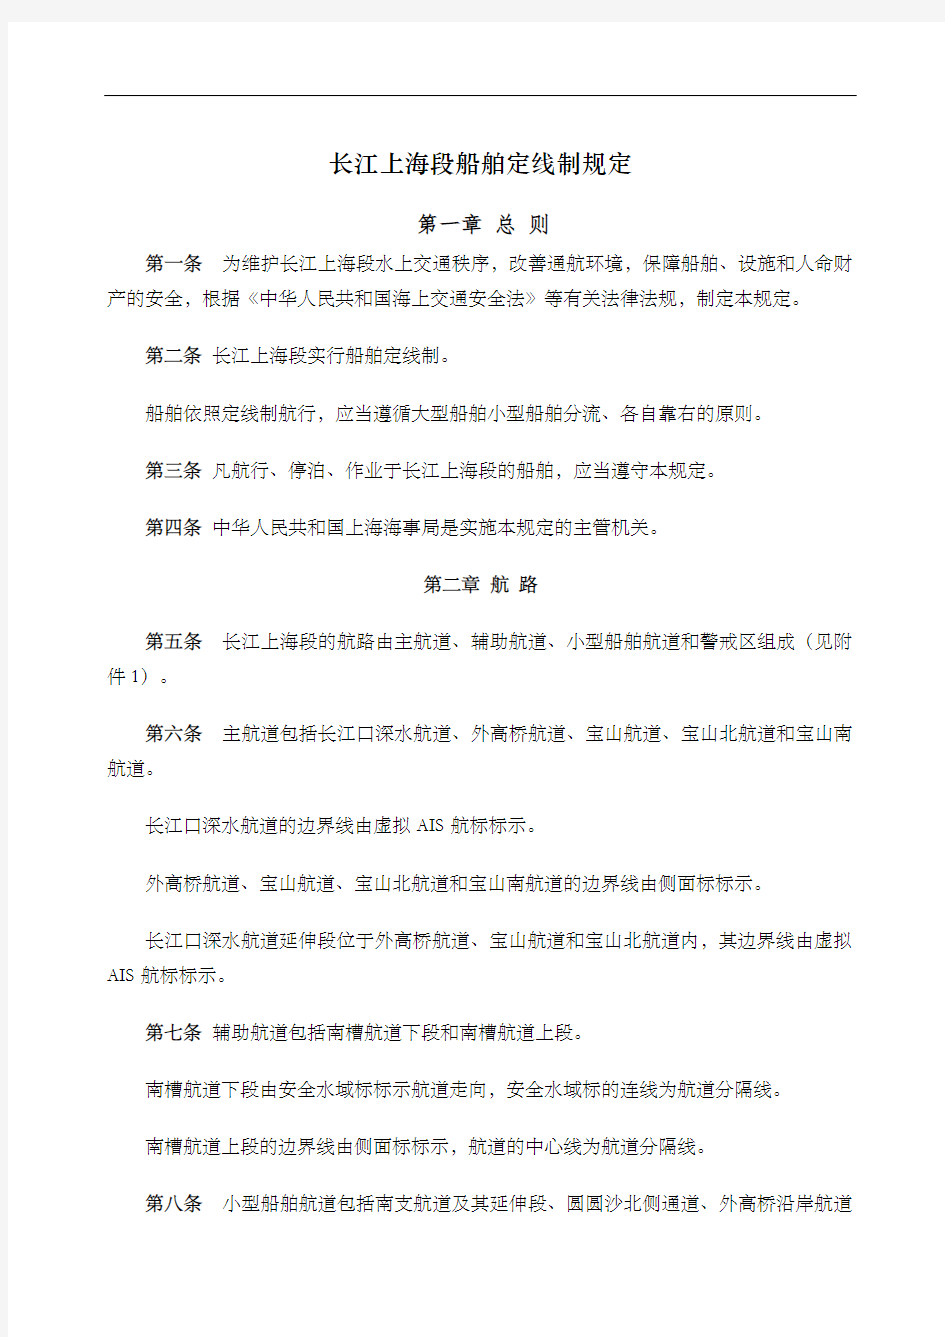 长江上海段船舶定线制规定发布稿精编WORD版